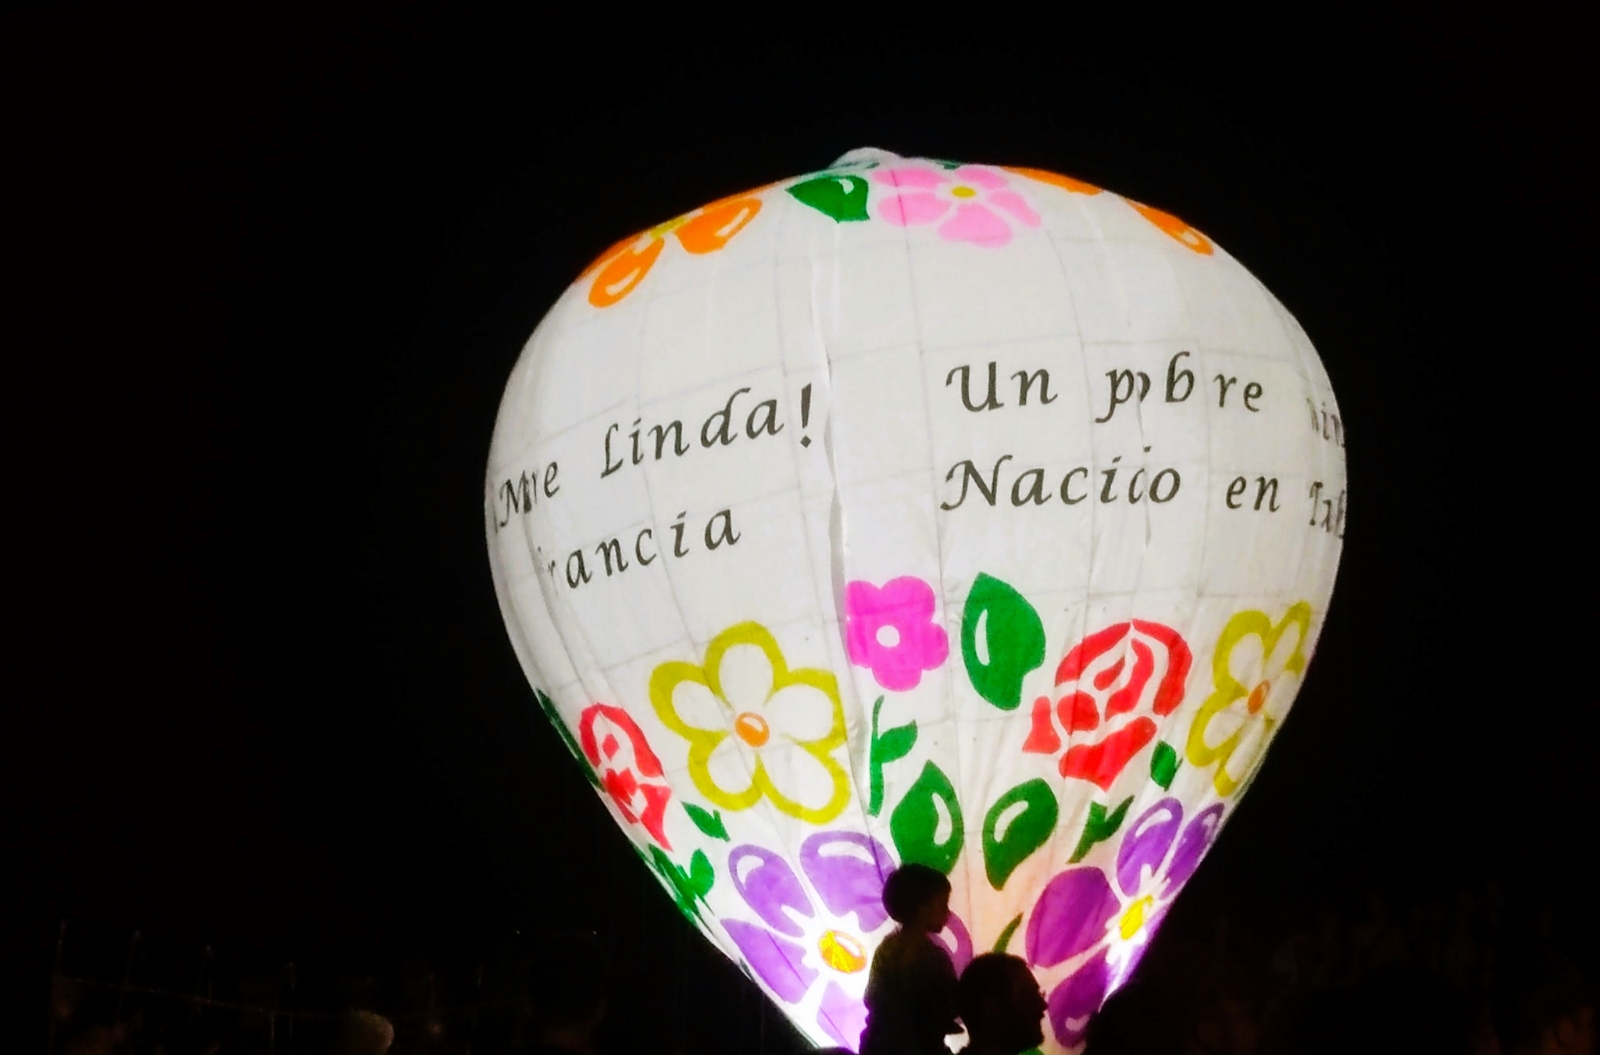 Globos nocturnos ponen en alto el nombre de Yucatán en Francia